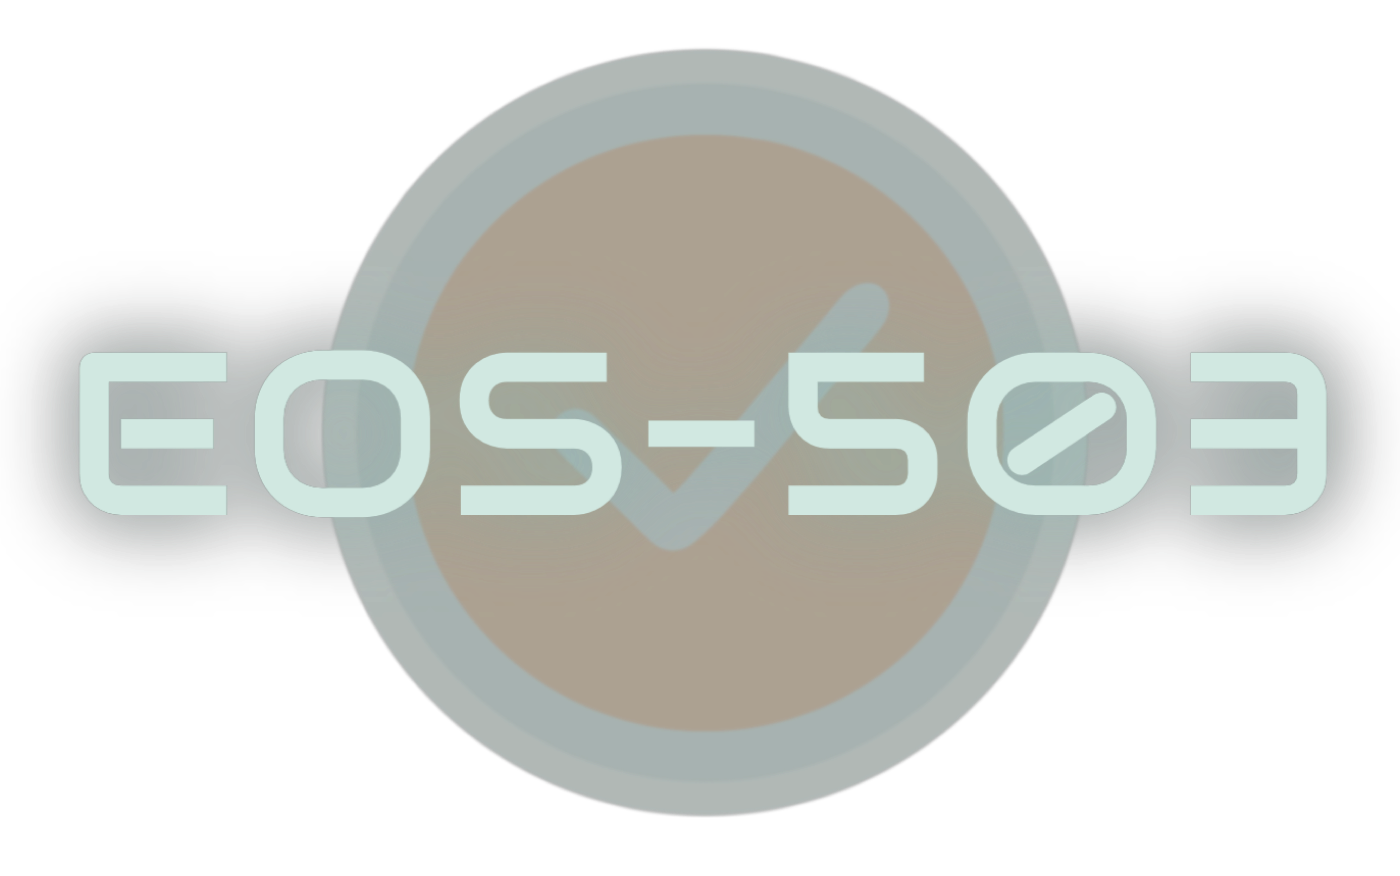 The text "EOS-503" over a circular badge with a checkmark.